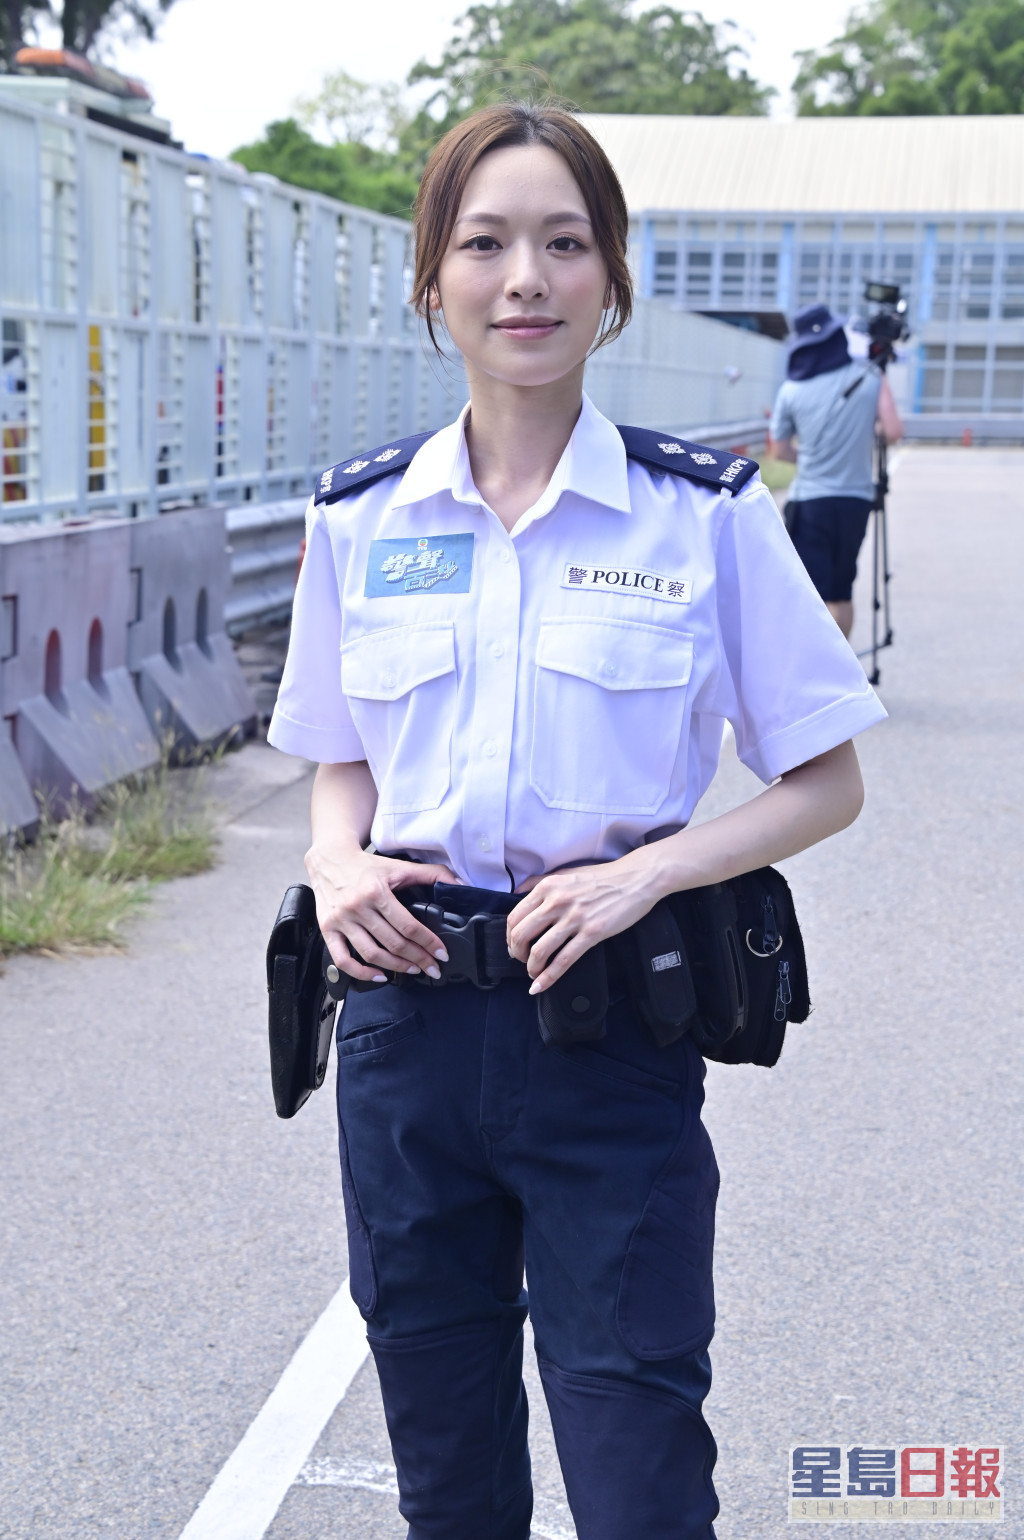 冯盈盈表示演过两次警察但首度着制服。